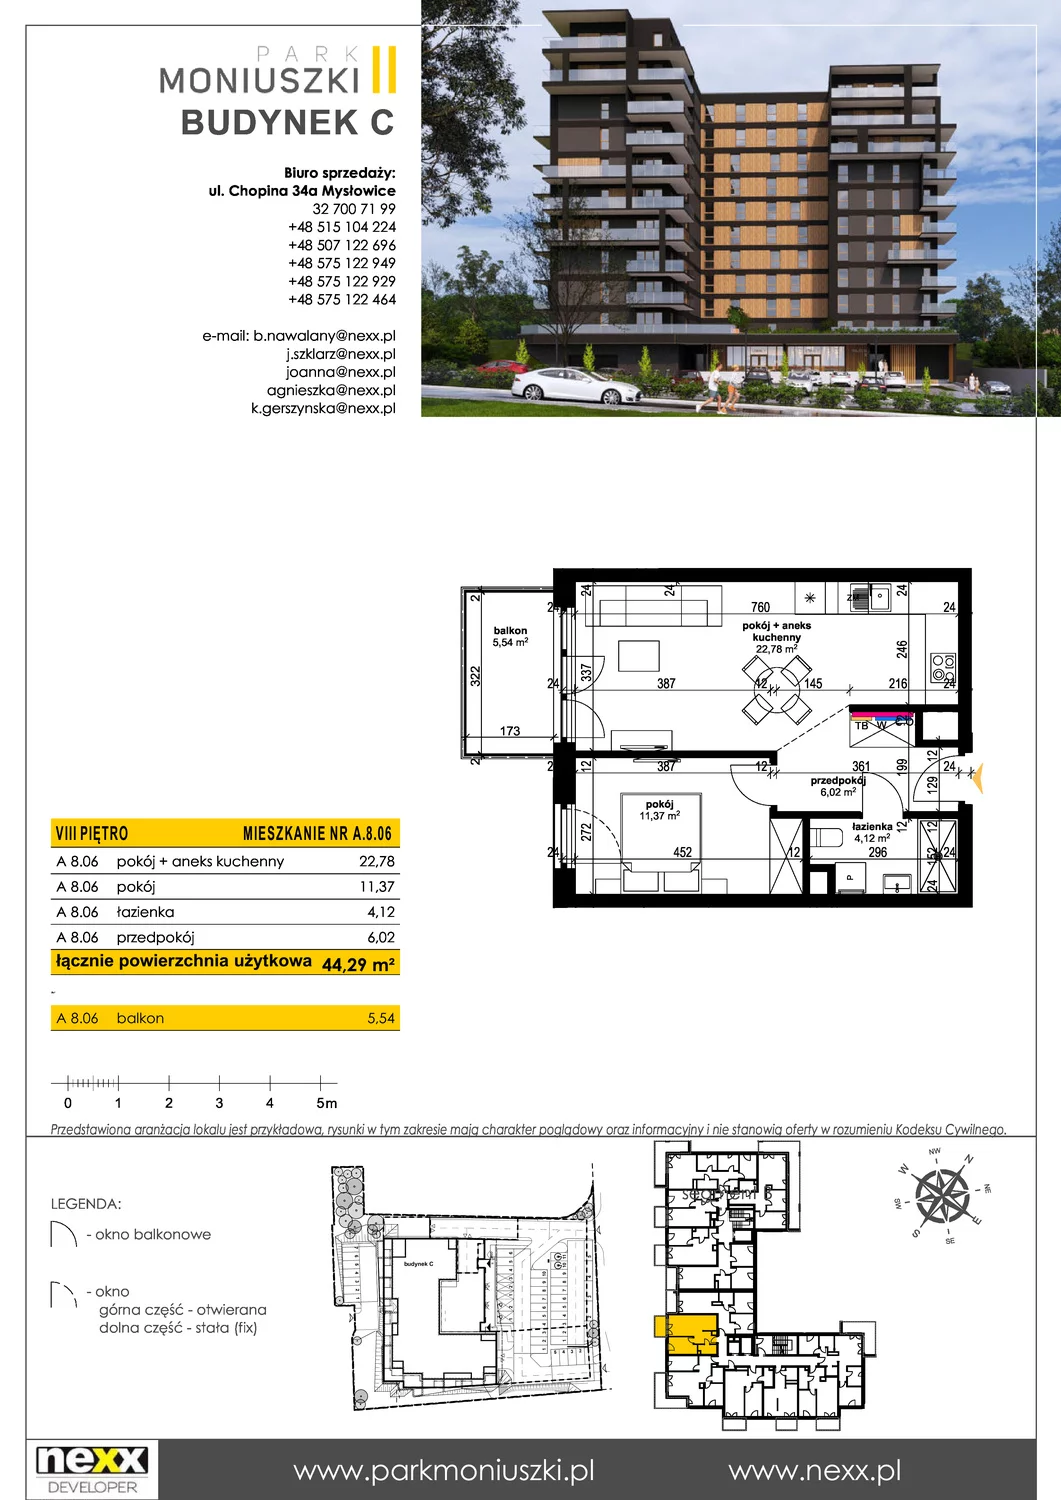 Mieszkanie 44,29 m², piętro 8, oferta nr A 8.06, Osiedle Park Moniuszki, Mysłowice, ul. Okrzei / Wielka Skotnica